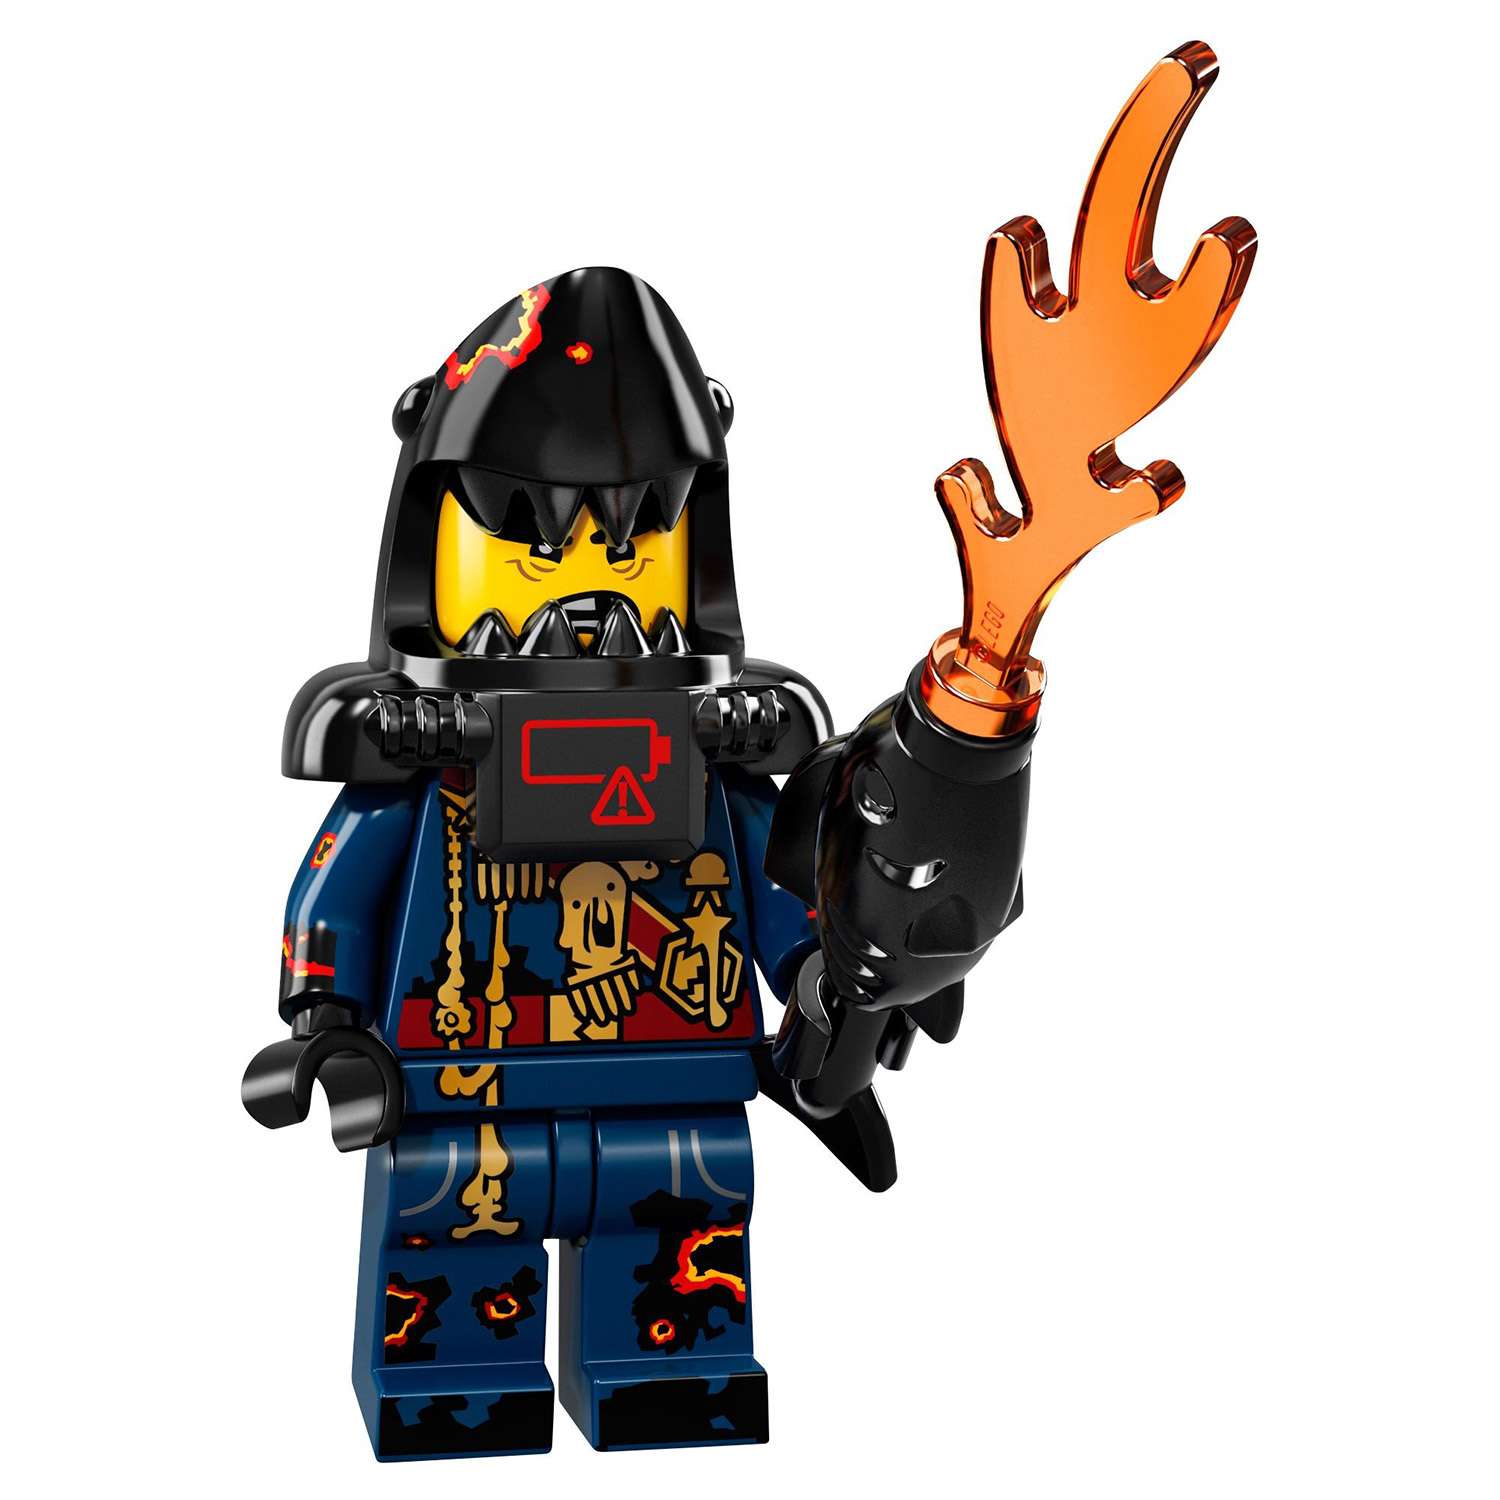 Конструктор LEGO Minifigures Минифигурки ФИЛЬМ: НИНДЗЯГО (71019) в ассортименте - фото 48